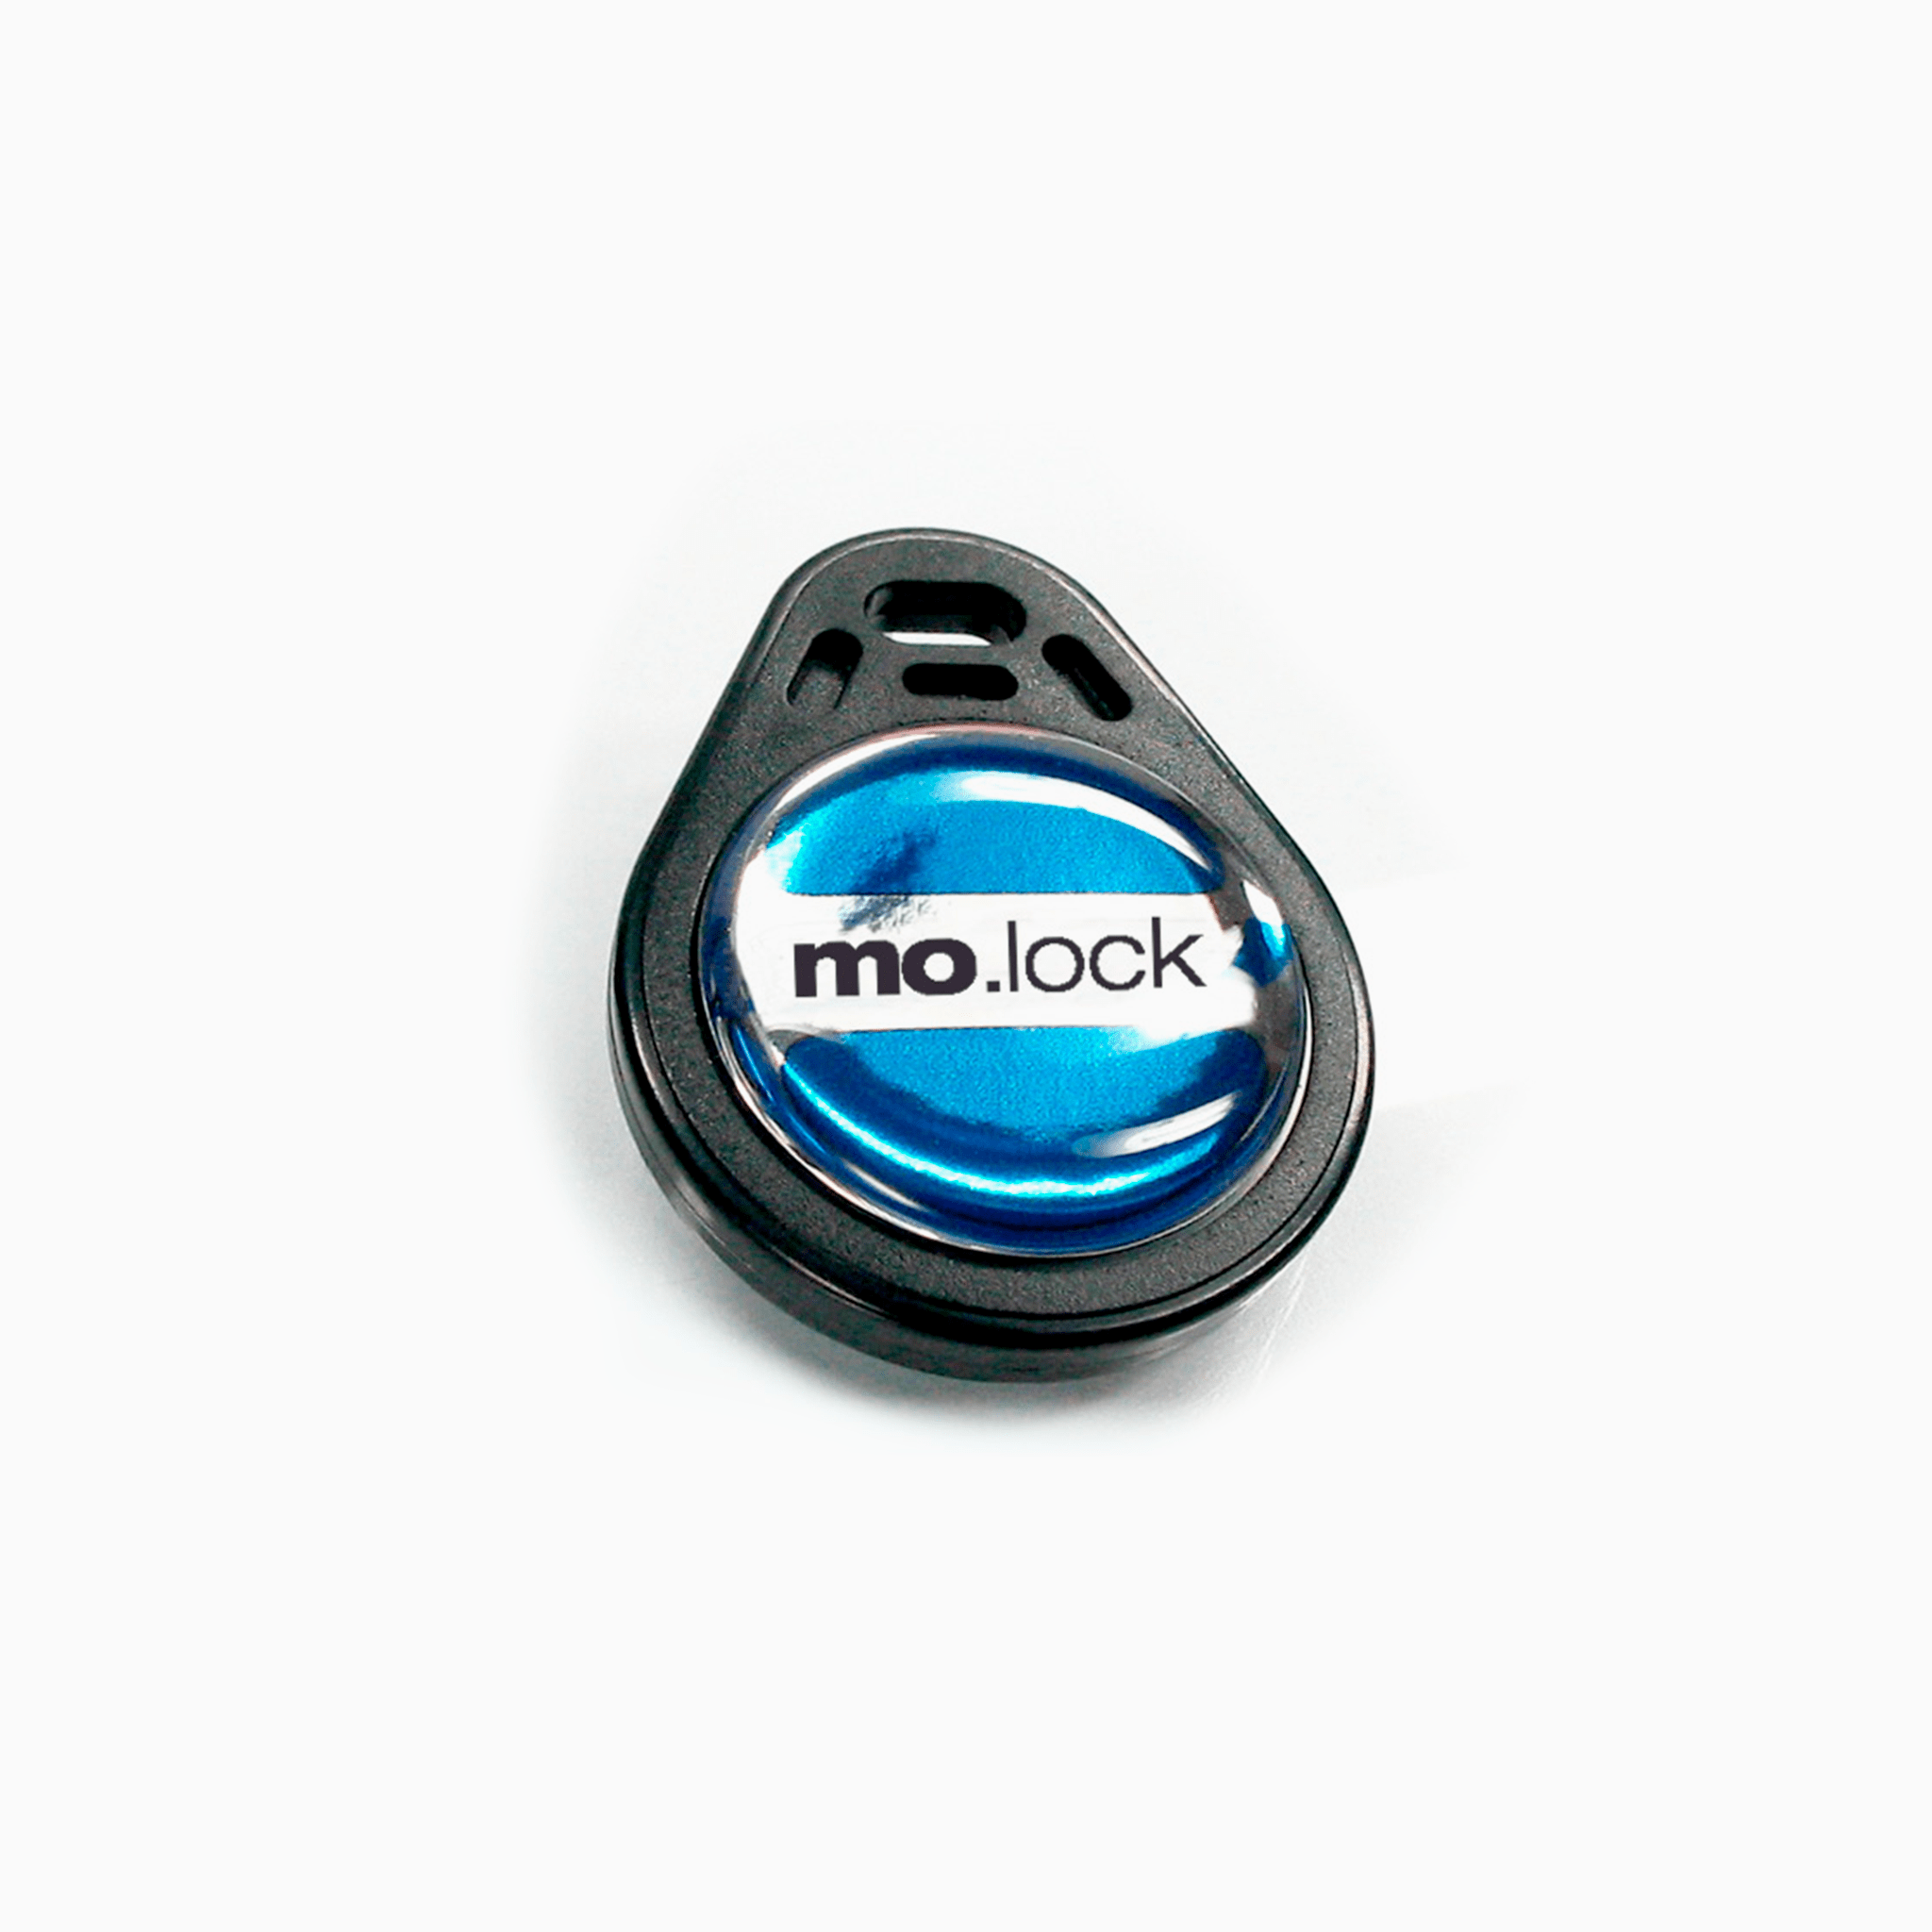 mo.lock RFID - Ersatzschlüssel